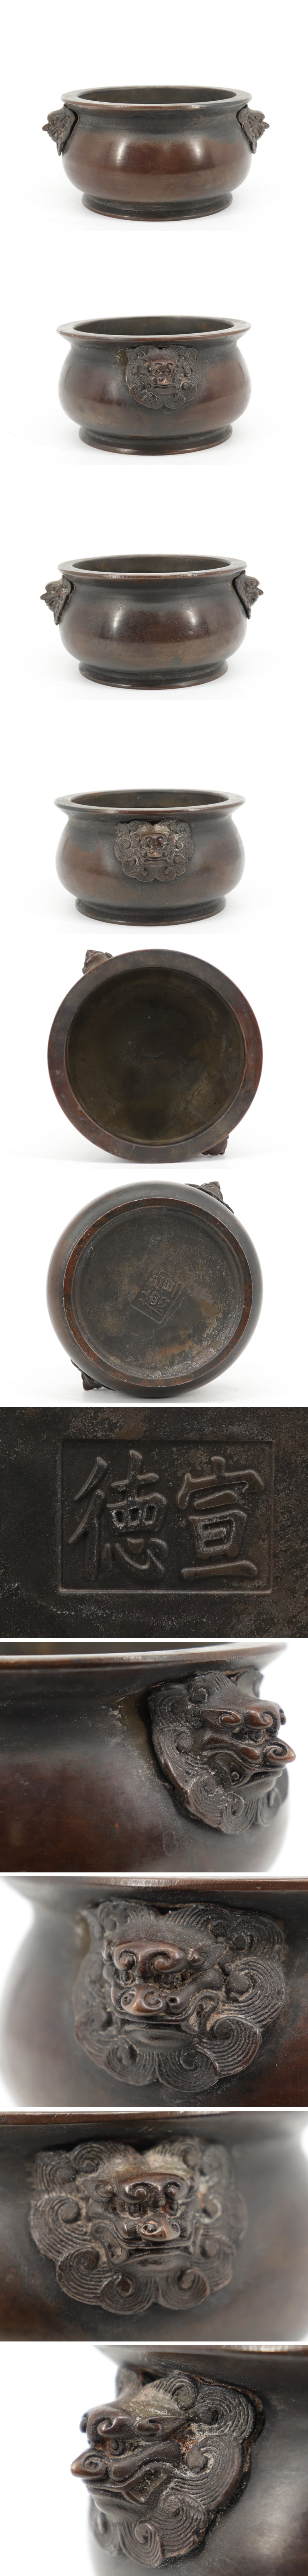 日本未入荷 銅製 香炉 中国古玩 宣徳 A025 唐物 獅子双耳 その他 